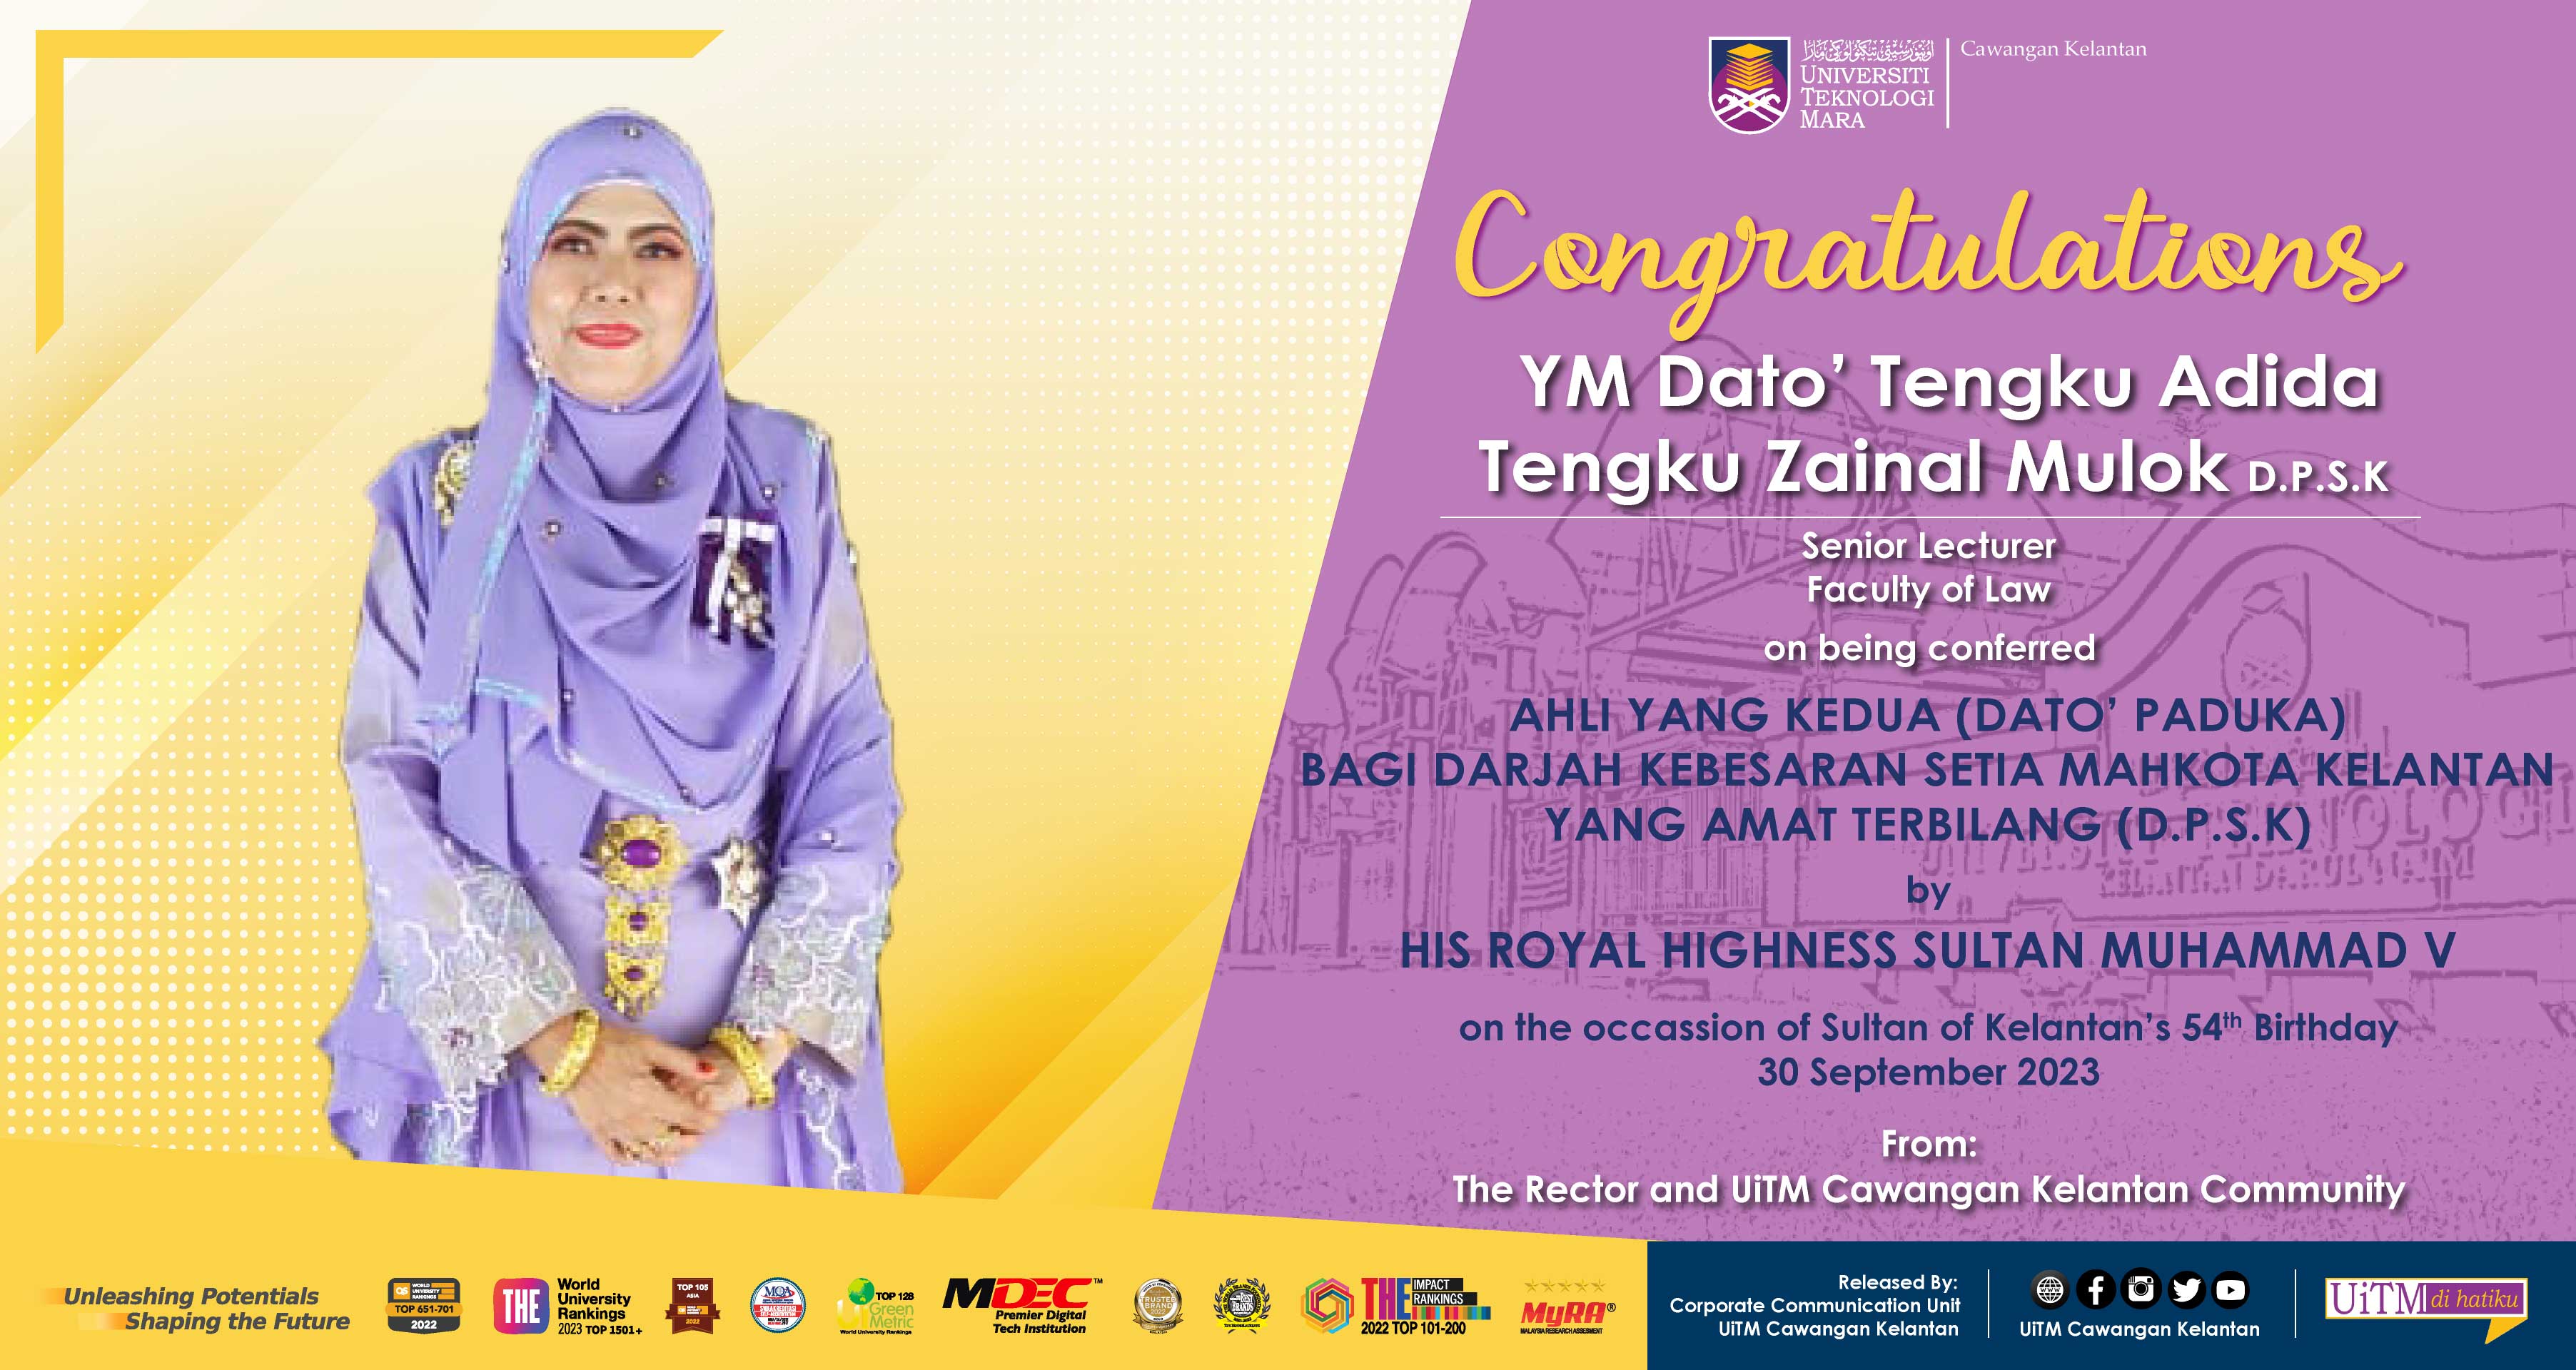 Congratulations!!! YM Dato' Tengku Adida Tengku Zainal Mulok D.P.S.K, Ahli Yang Kedua Ahli (Dato' Paduka) Bagi Darjah Kebesaran Setia Mahkota Kelantan Yang Amat Terbilang (D.P.S.K)